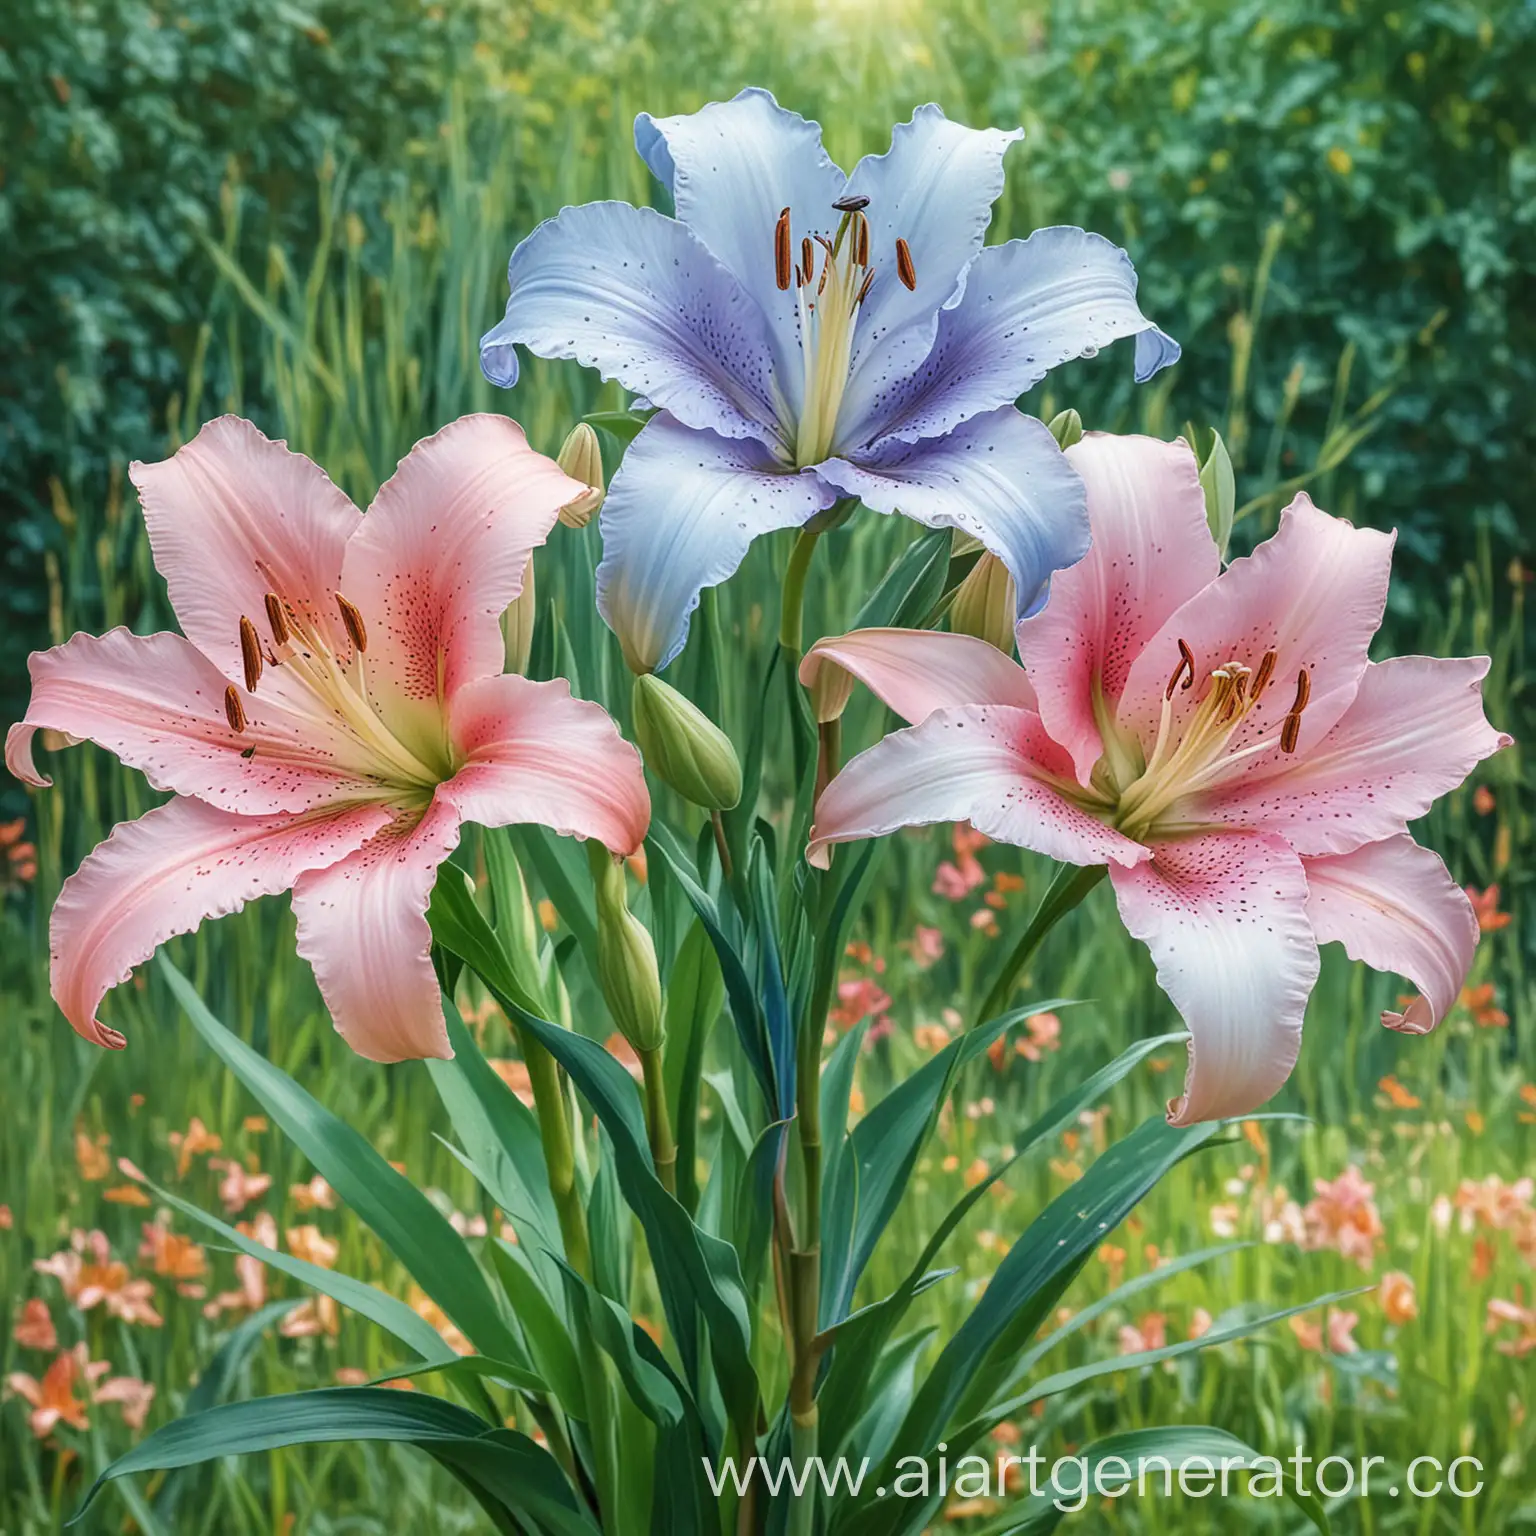 Три цветка лилии разных цветов : голубая, розовая, белая. Всё три цветка на одном стебле на первом плане. На фоне размытая зелёная трава и листики. Картинка в стиле цветного диджитал рисунка карандашной кистью